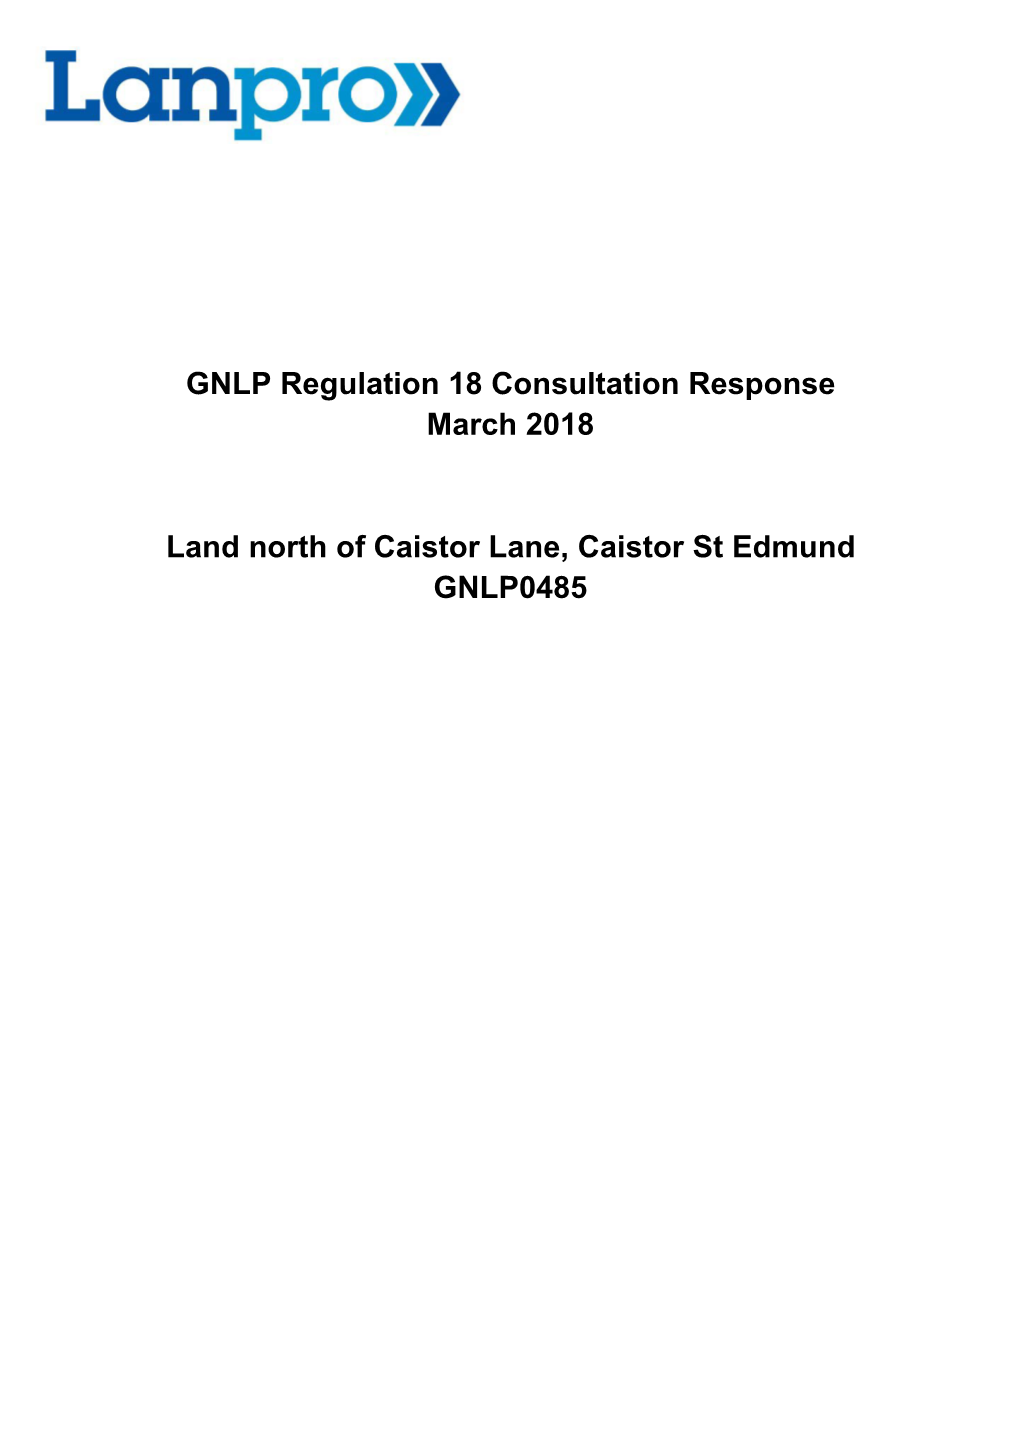 GNLP0485 Caistor St Edmund Representation to GNLP